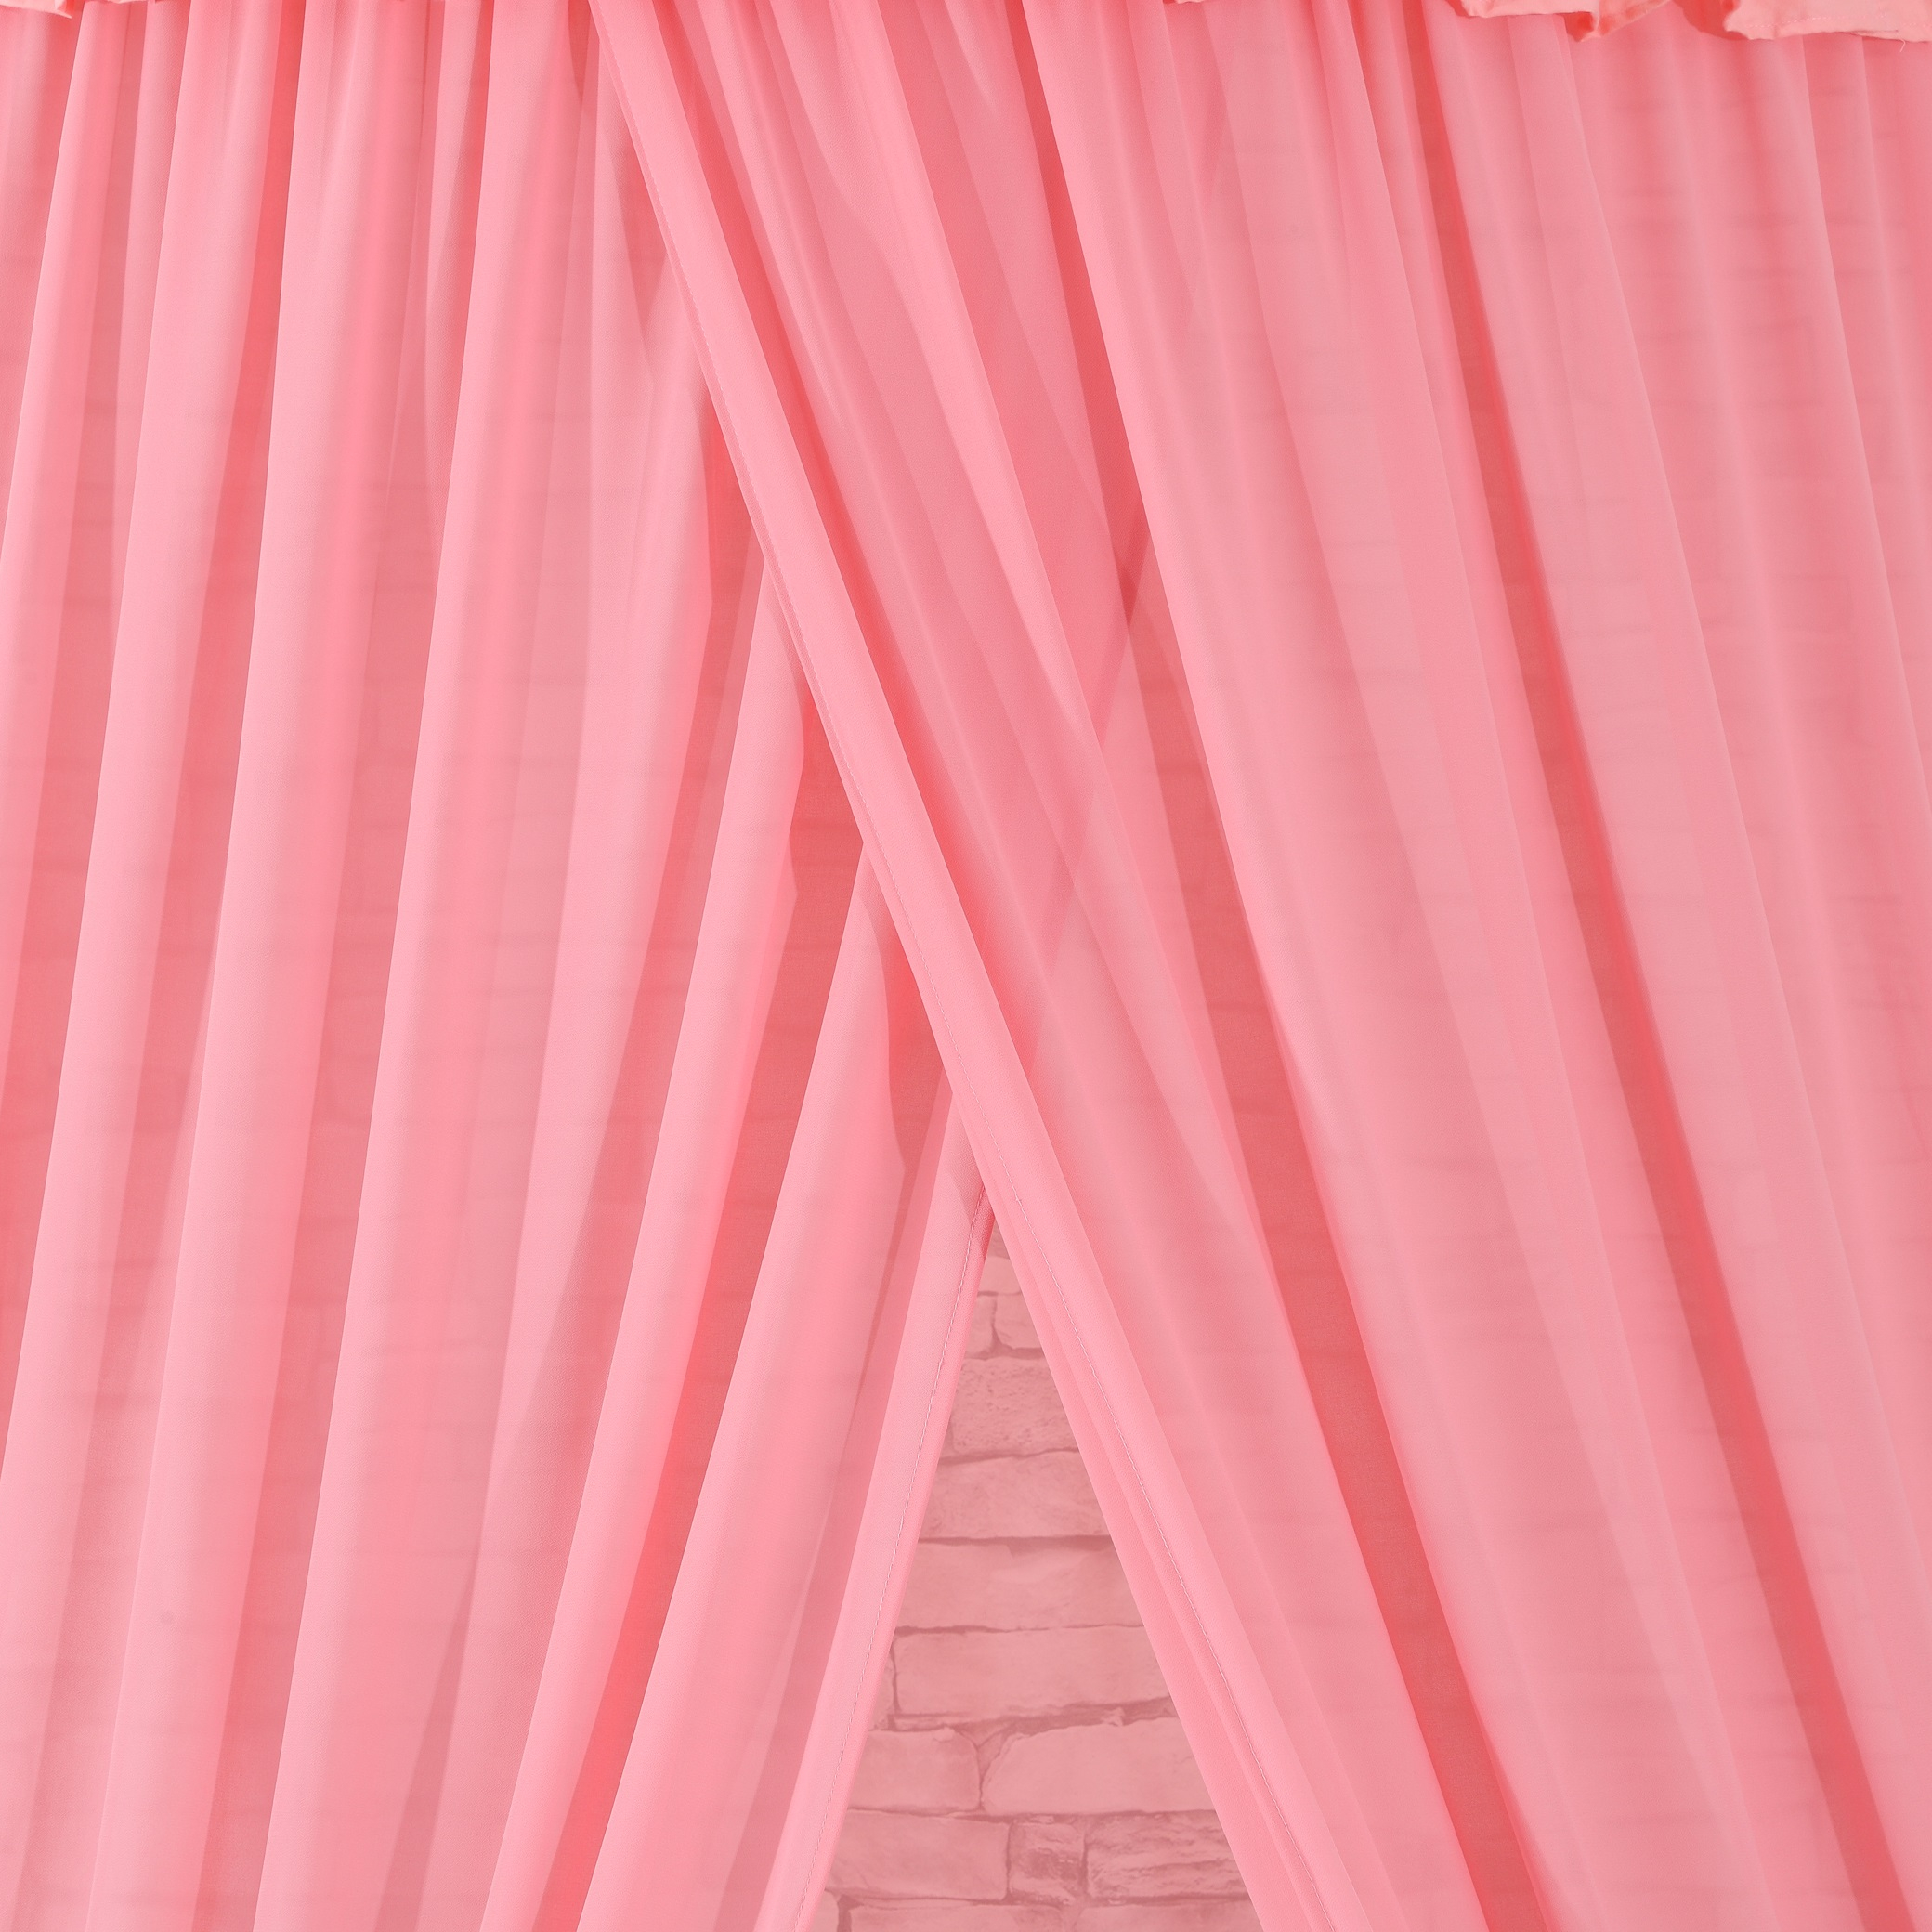 2020 Neues Produkt Pink 100% Polyester gefaltetes hängendes Moskitonetz